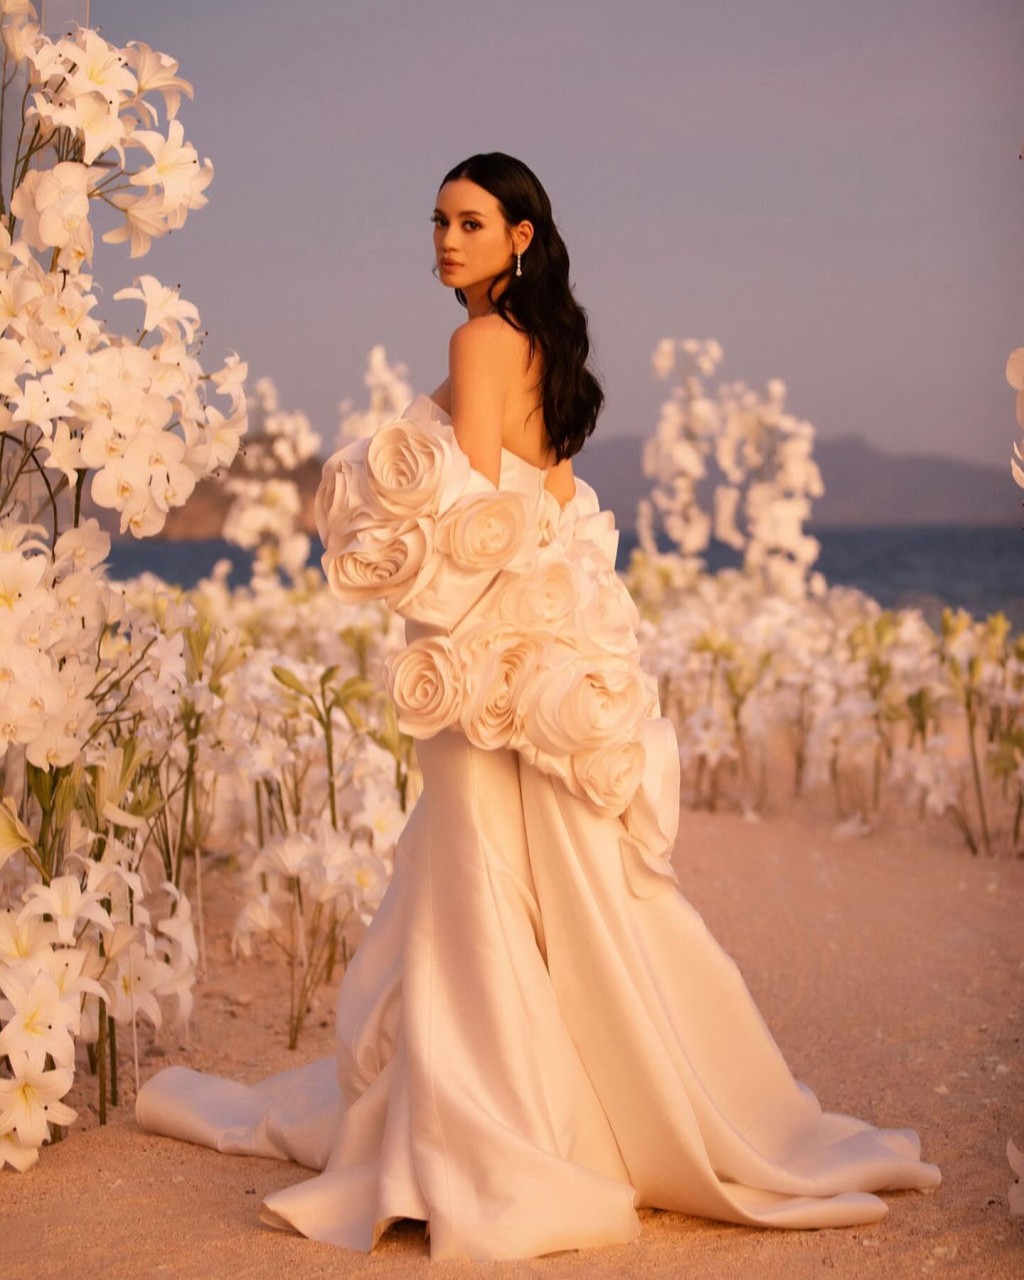 林恬兒穿上的婚紗來自台灣品牌Nicole + Felicia。